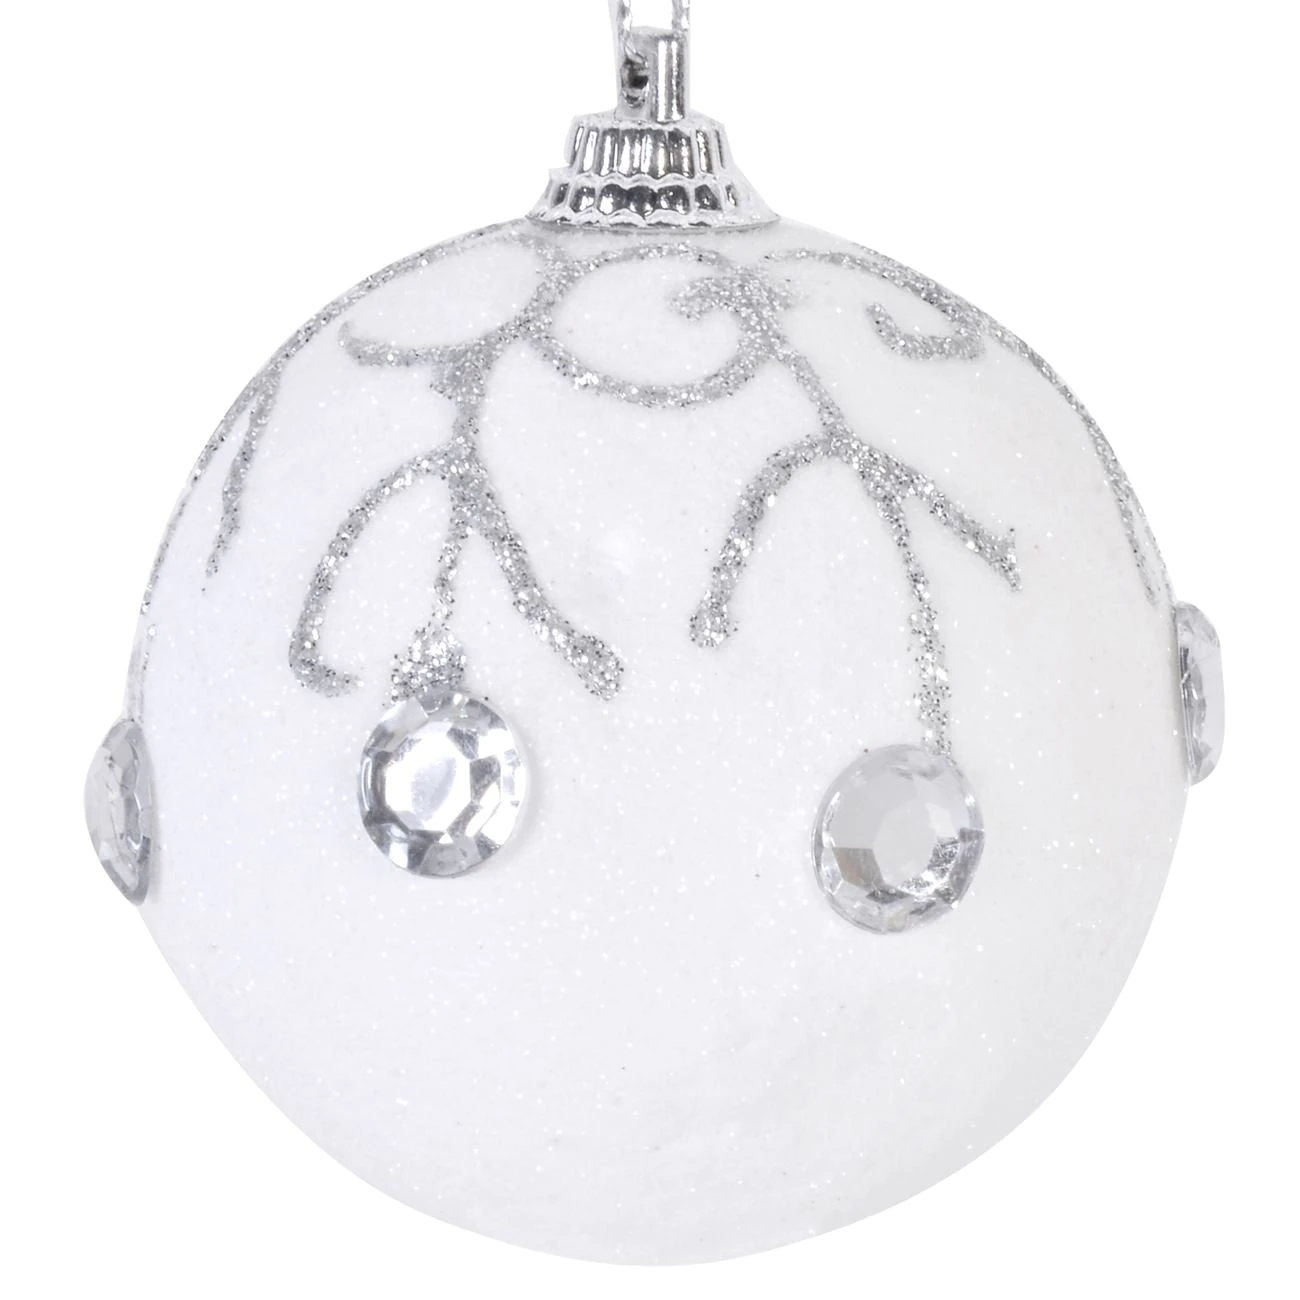 pleasant Ewell micro Set 6 globuri albe cu pietre lucioase de Craciun, 6 cm - Decoratiuni si  ornamente Craciun